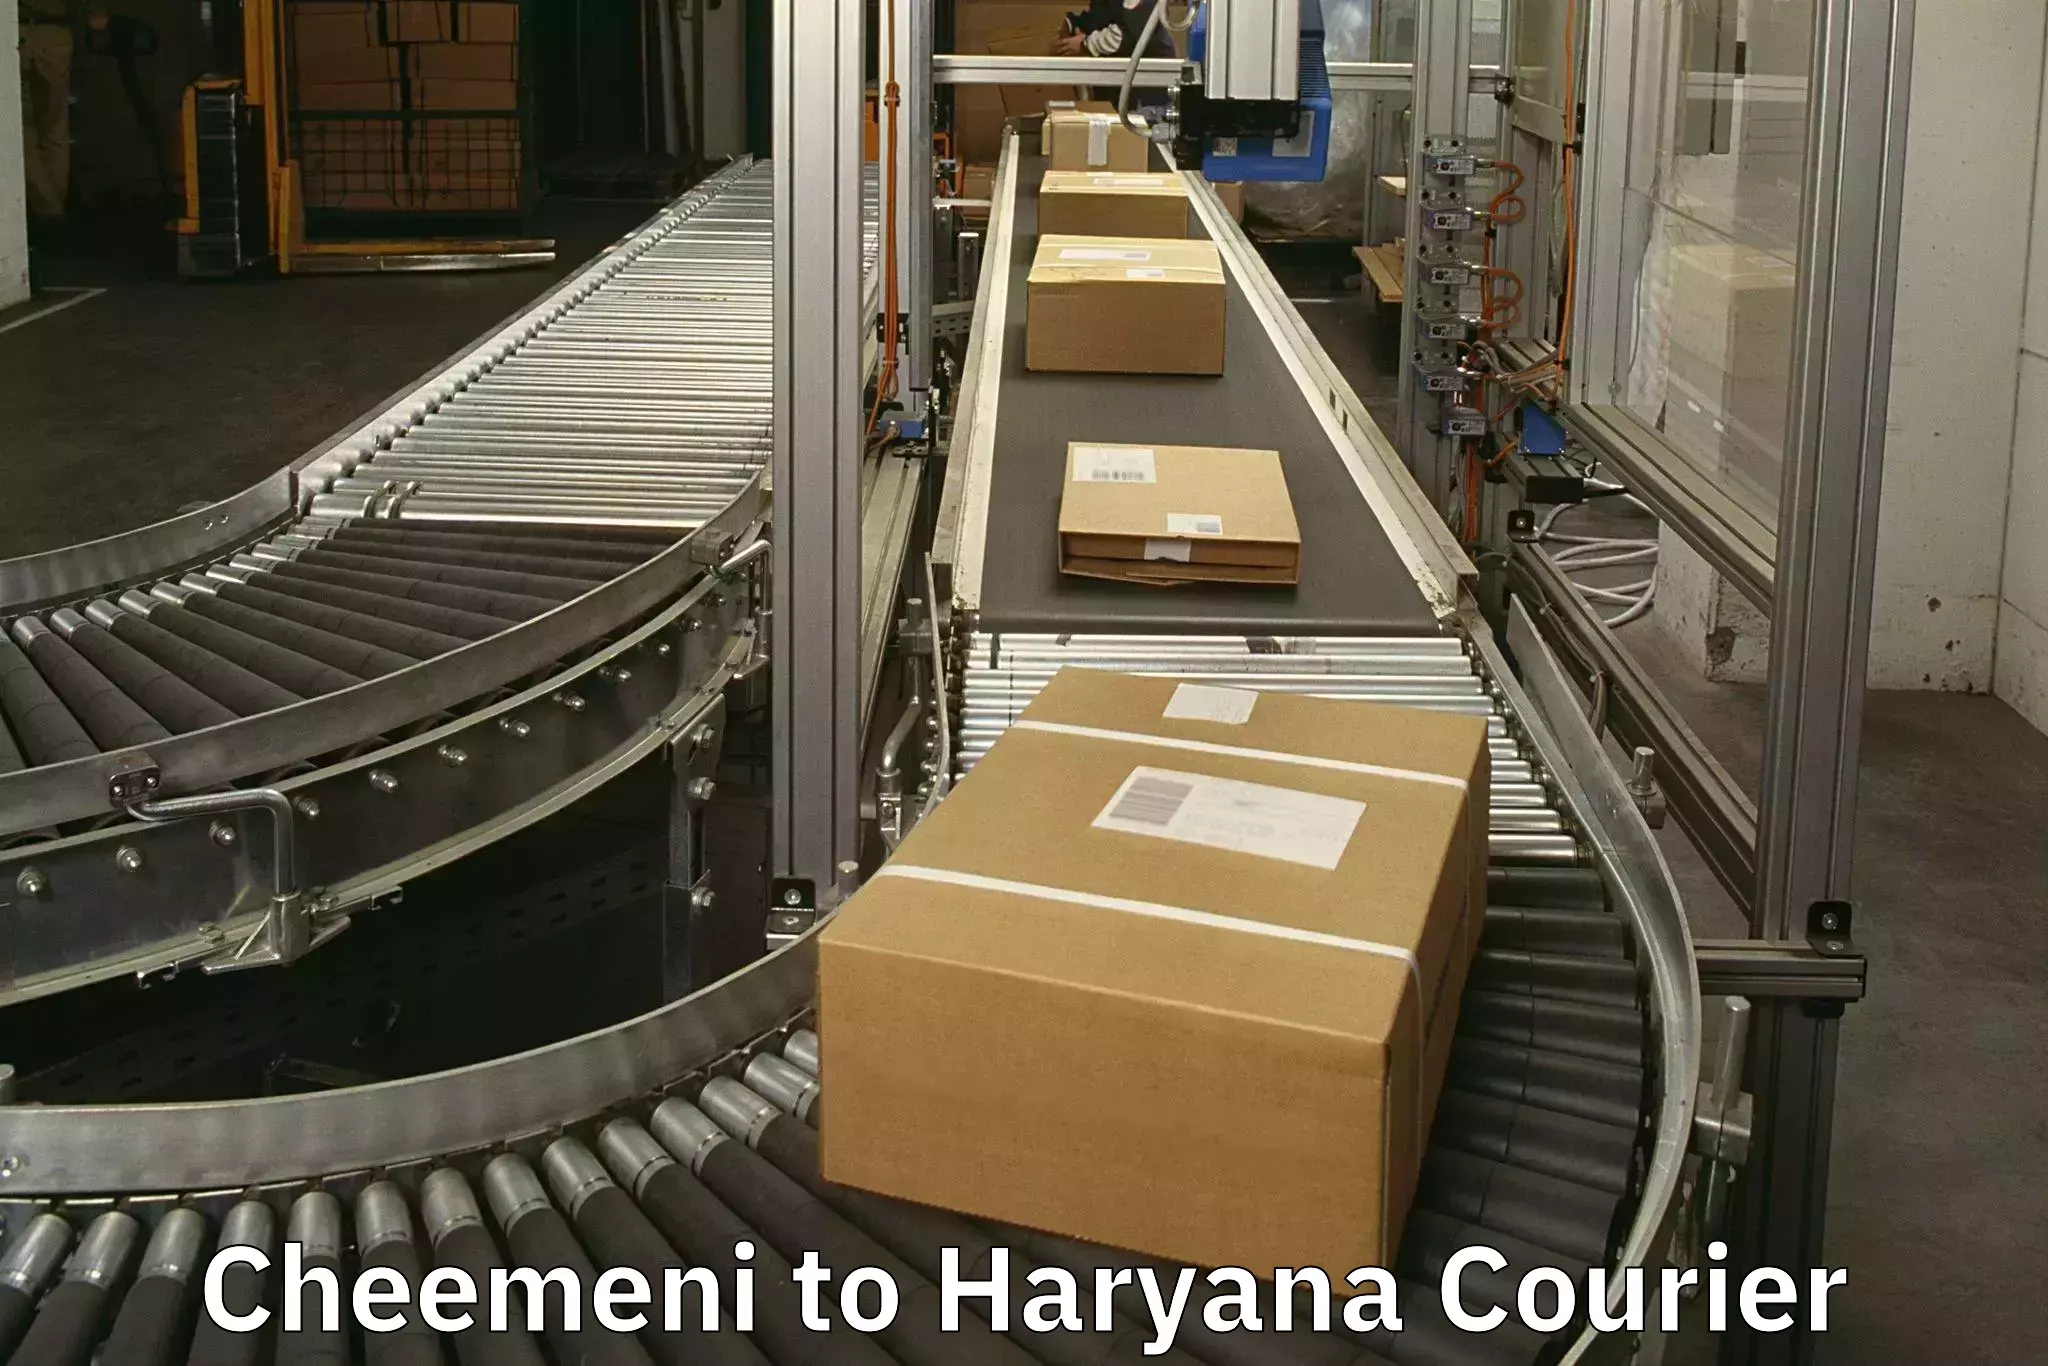 Luggage transport consultancy Cheemeni to Haryana